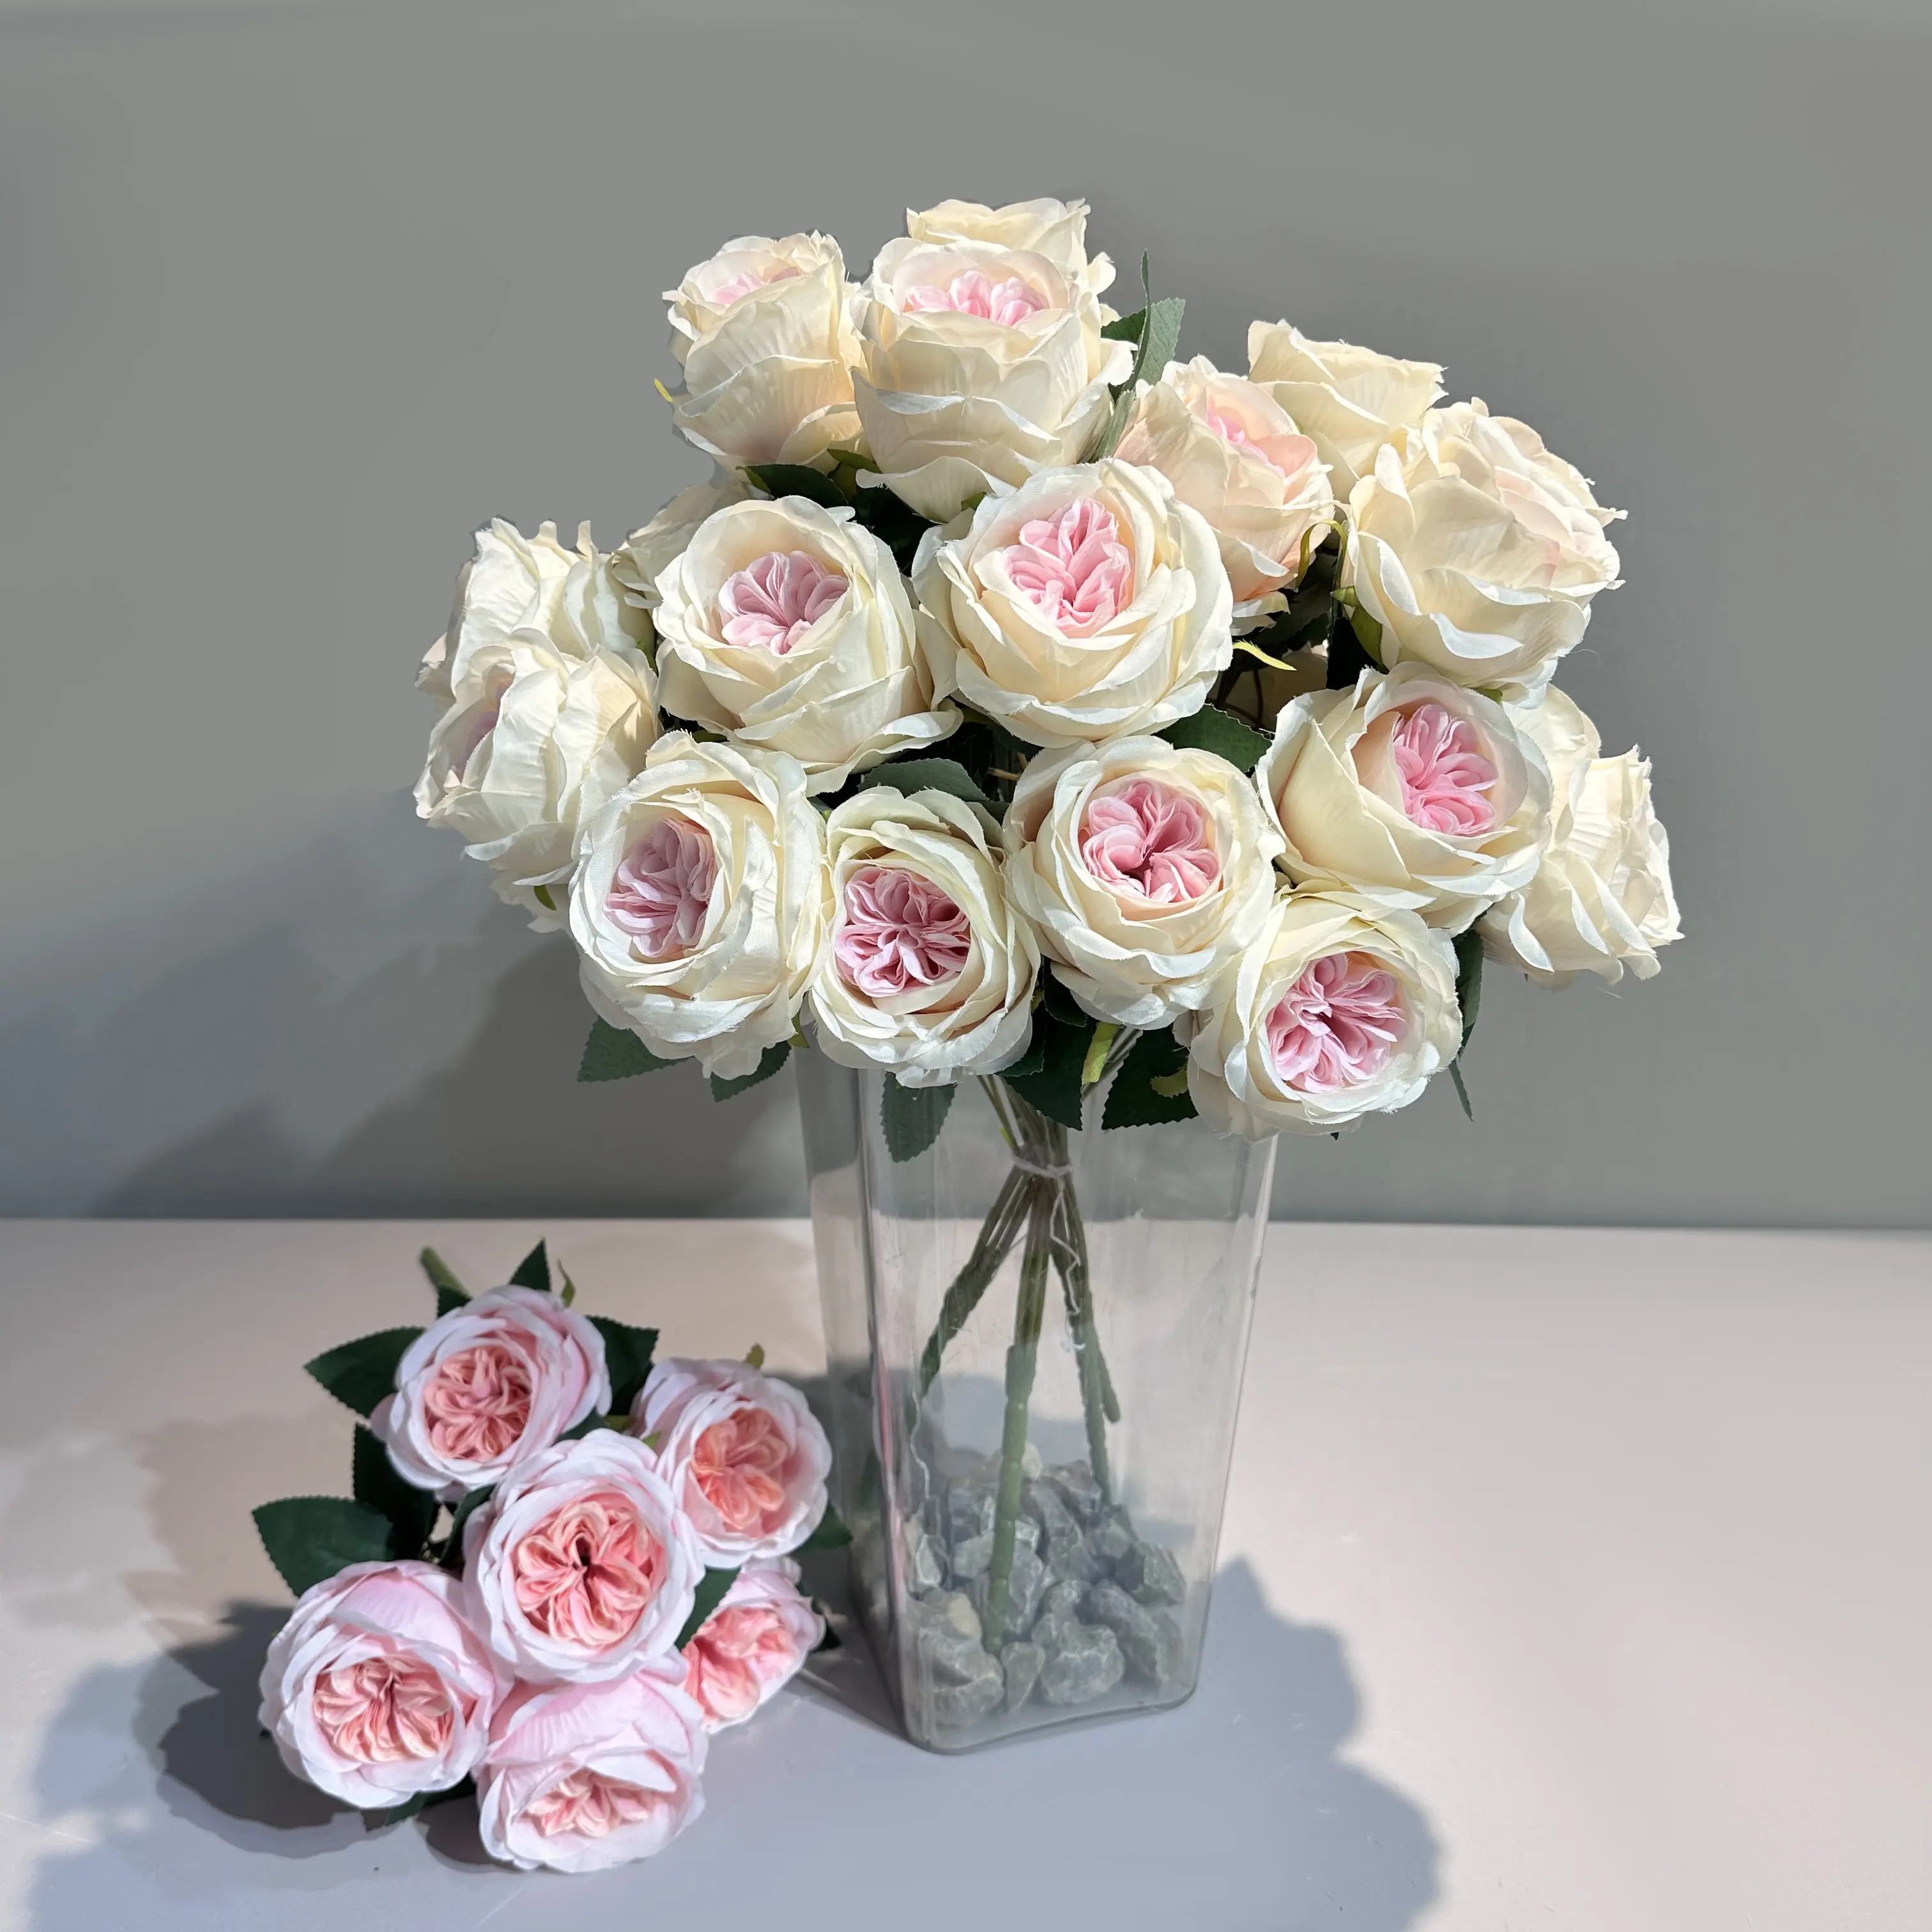 Venda quente por atacado de rosas falsas de toque real slik flores artificiais suspensas para decoração de casamento